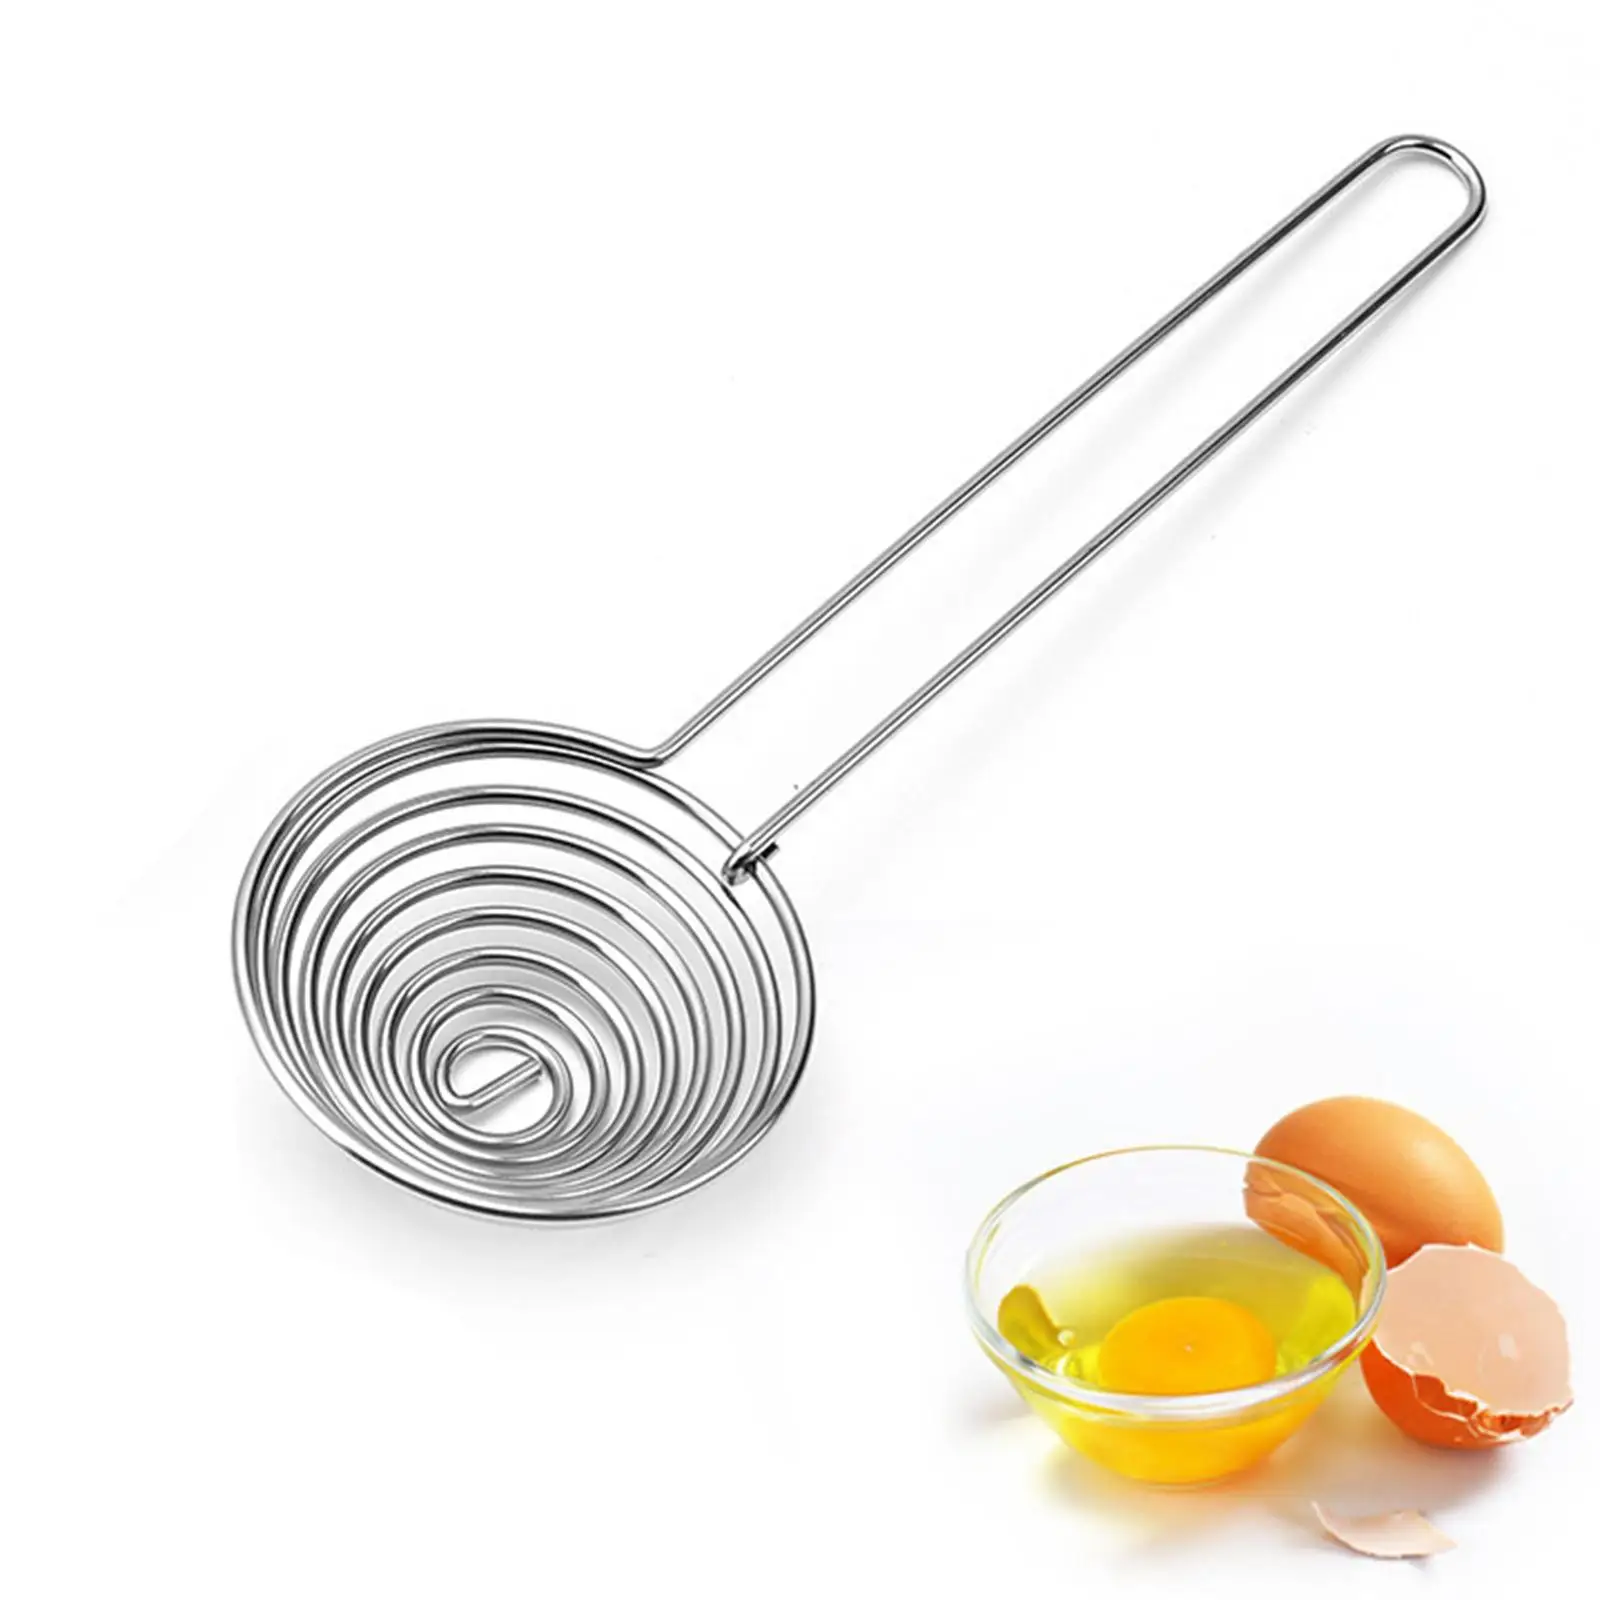 Stainless Steel Egg Separator Egg Divider Yolk and White Separator Tool,